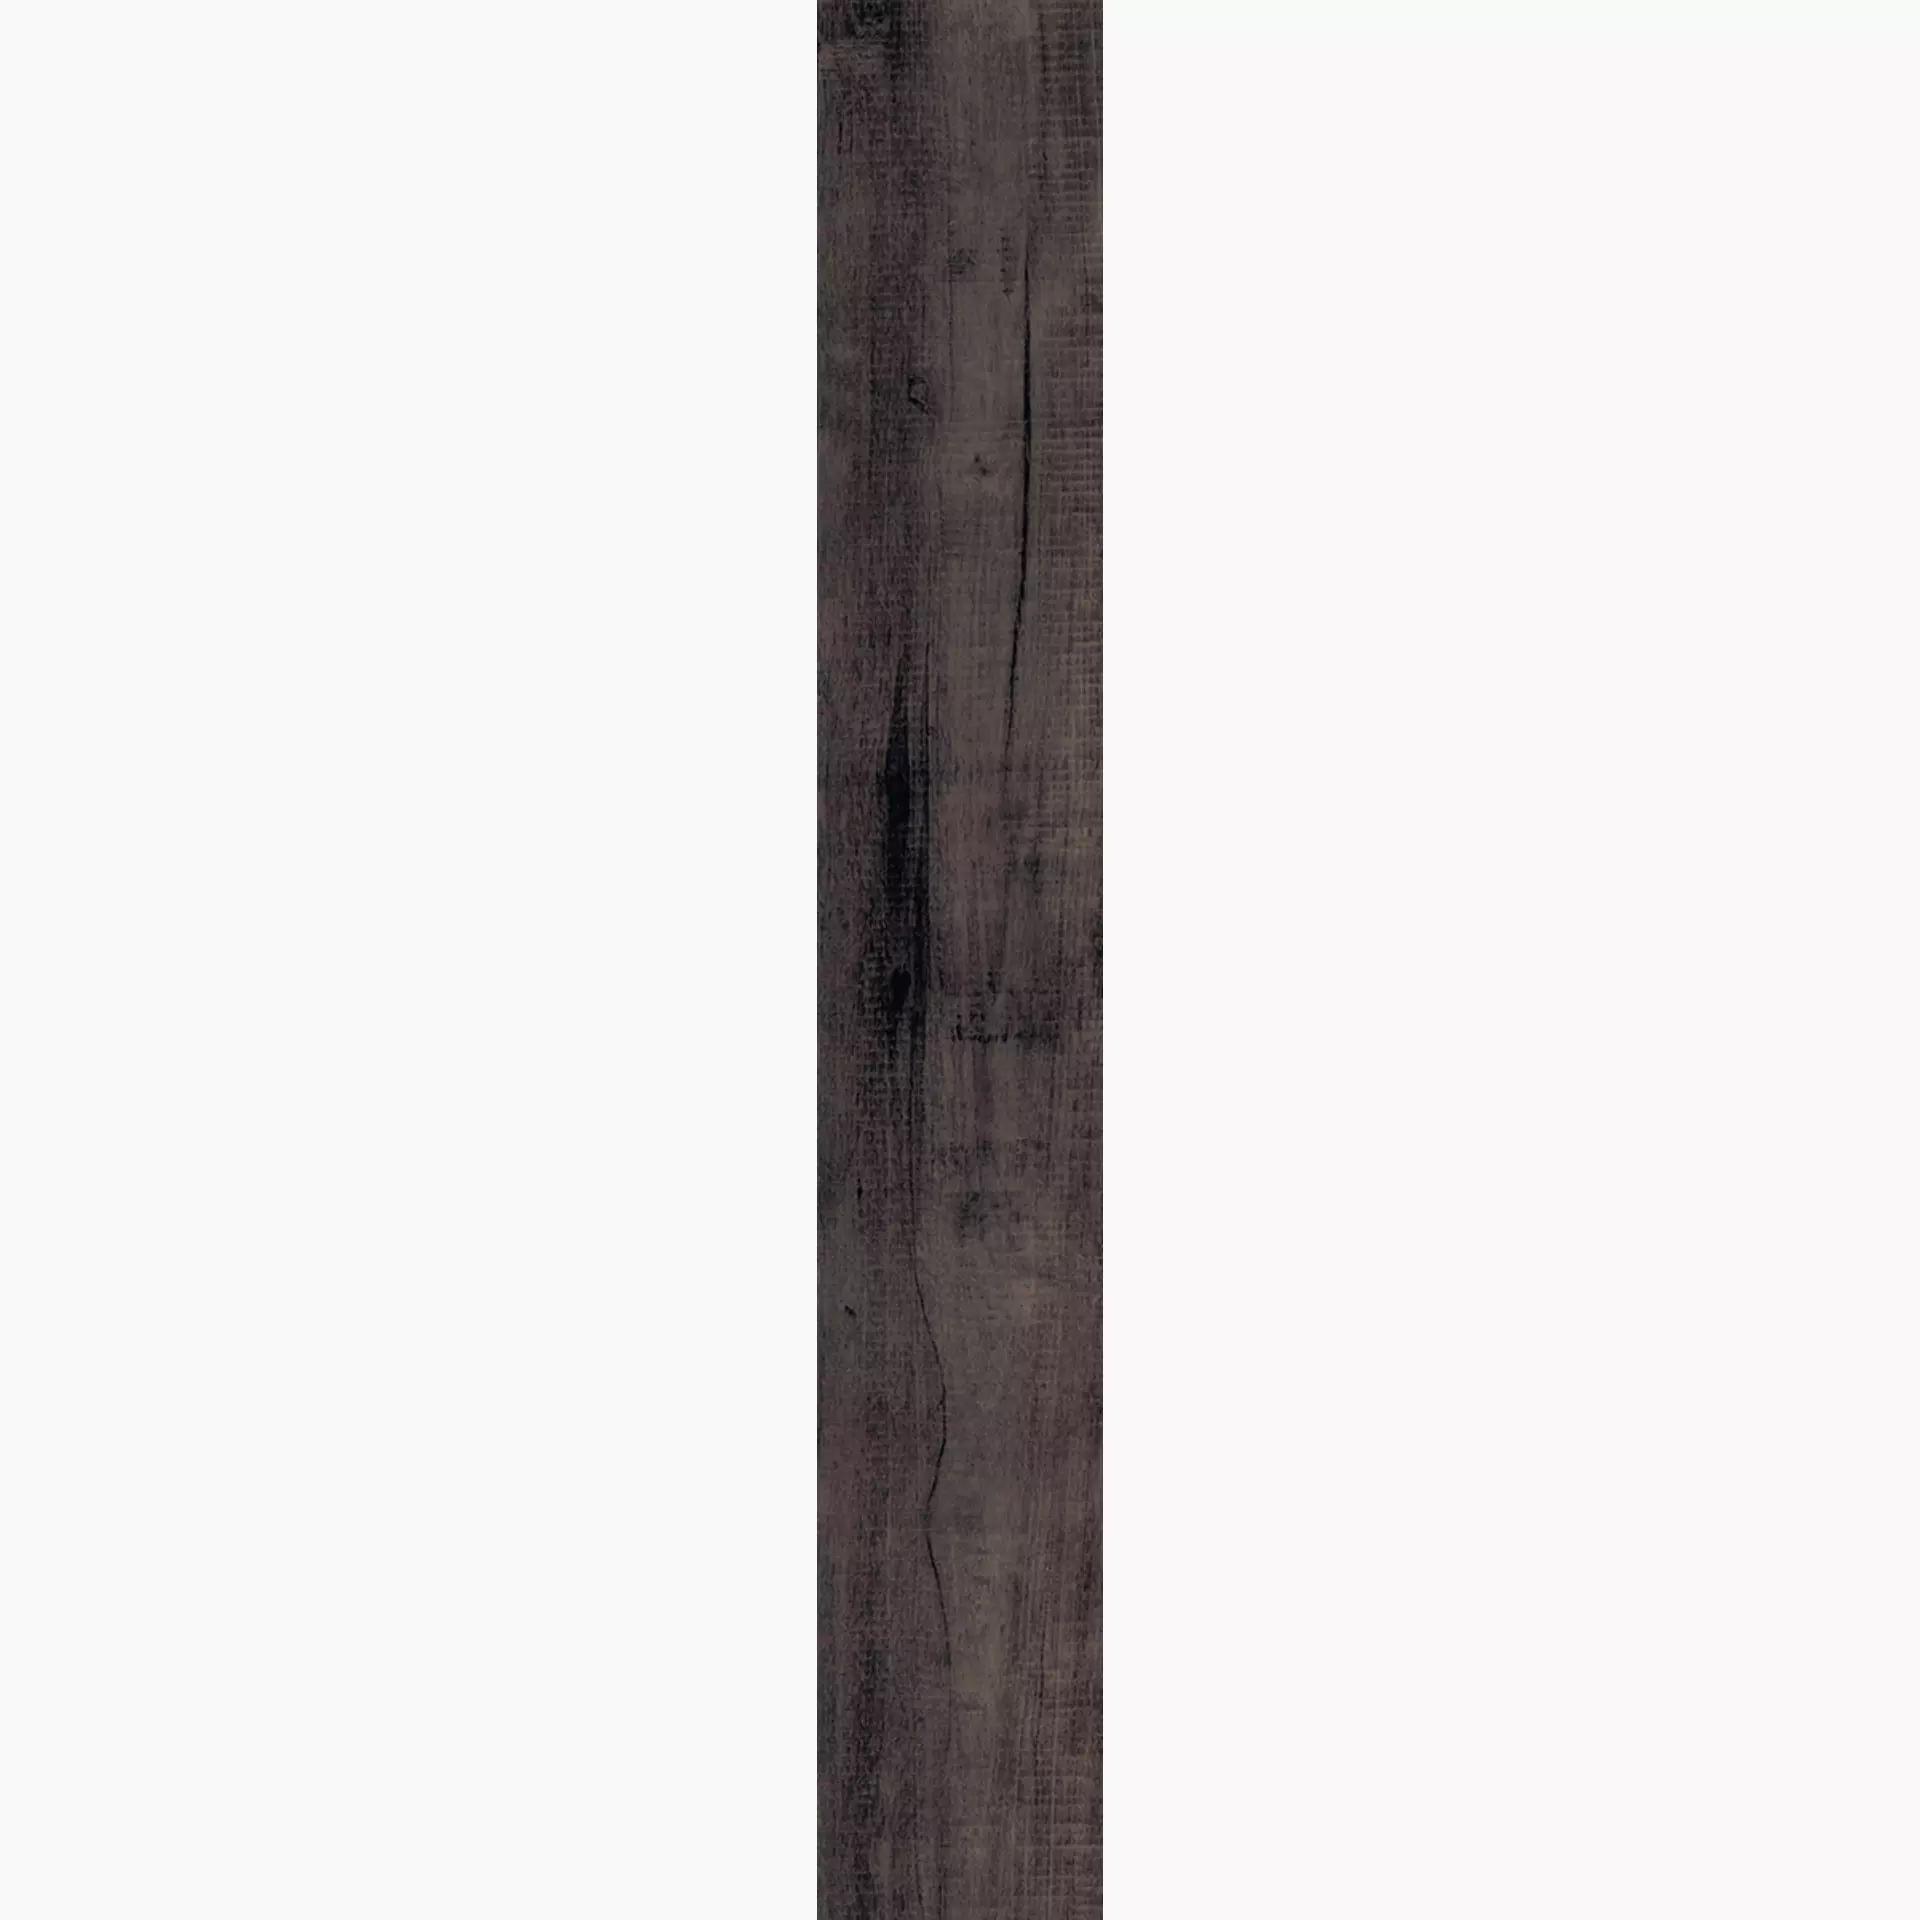 Rondine Aspen Dark Strong J87860 15x100cm 9,5mm